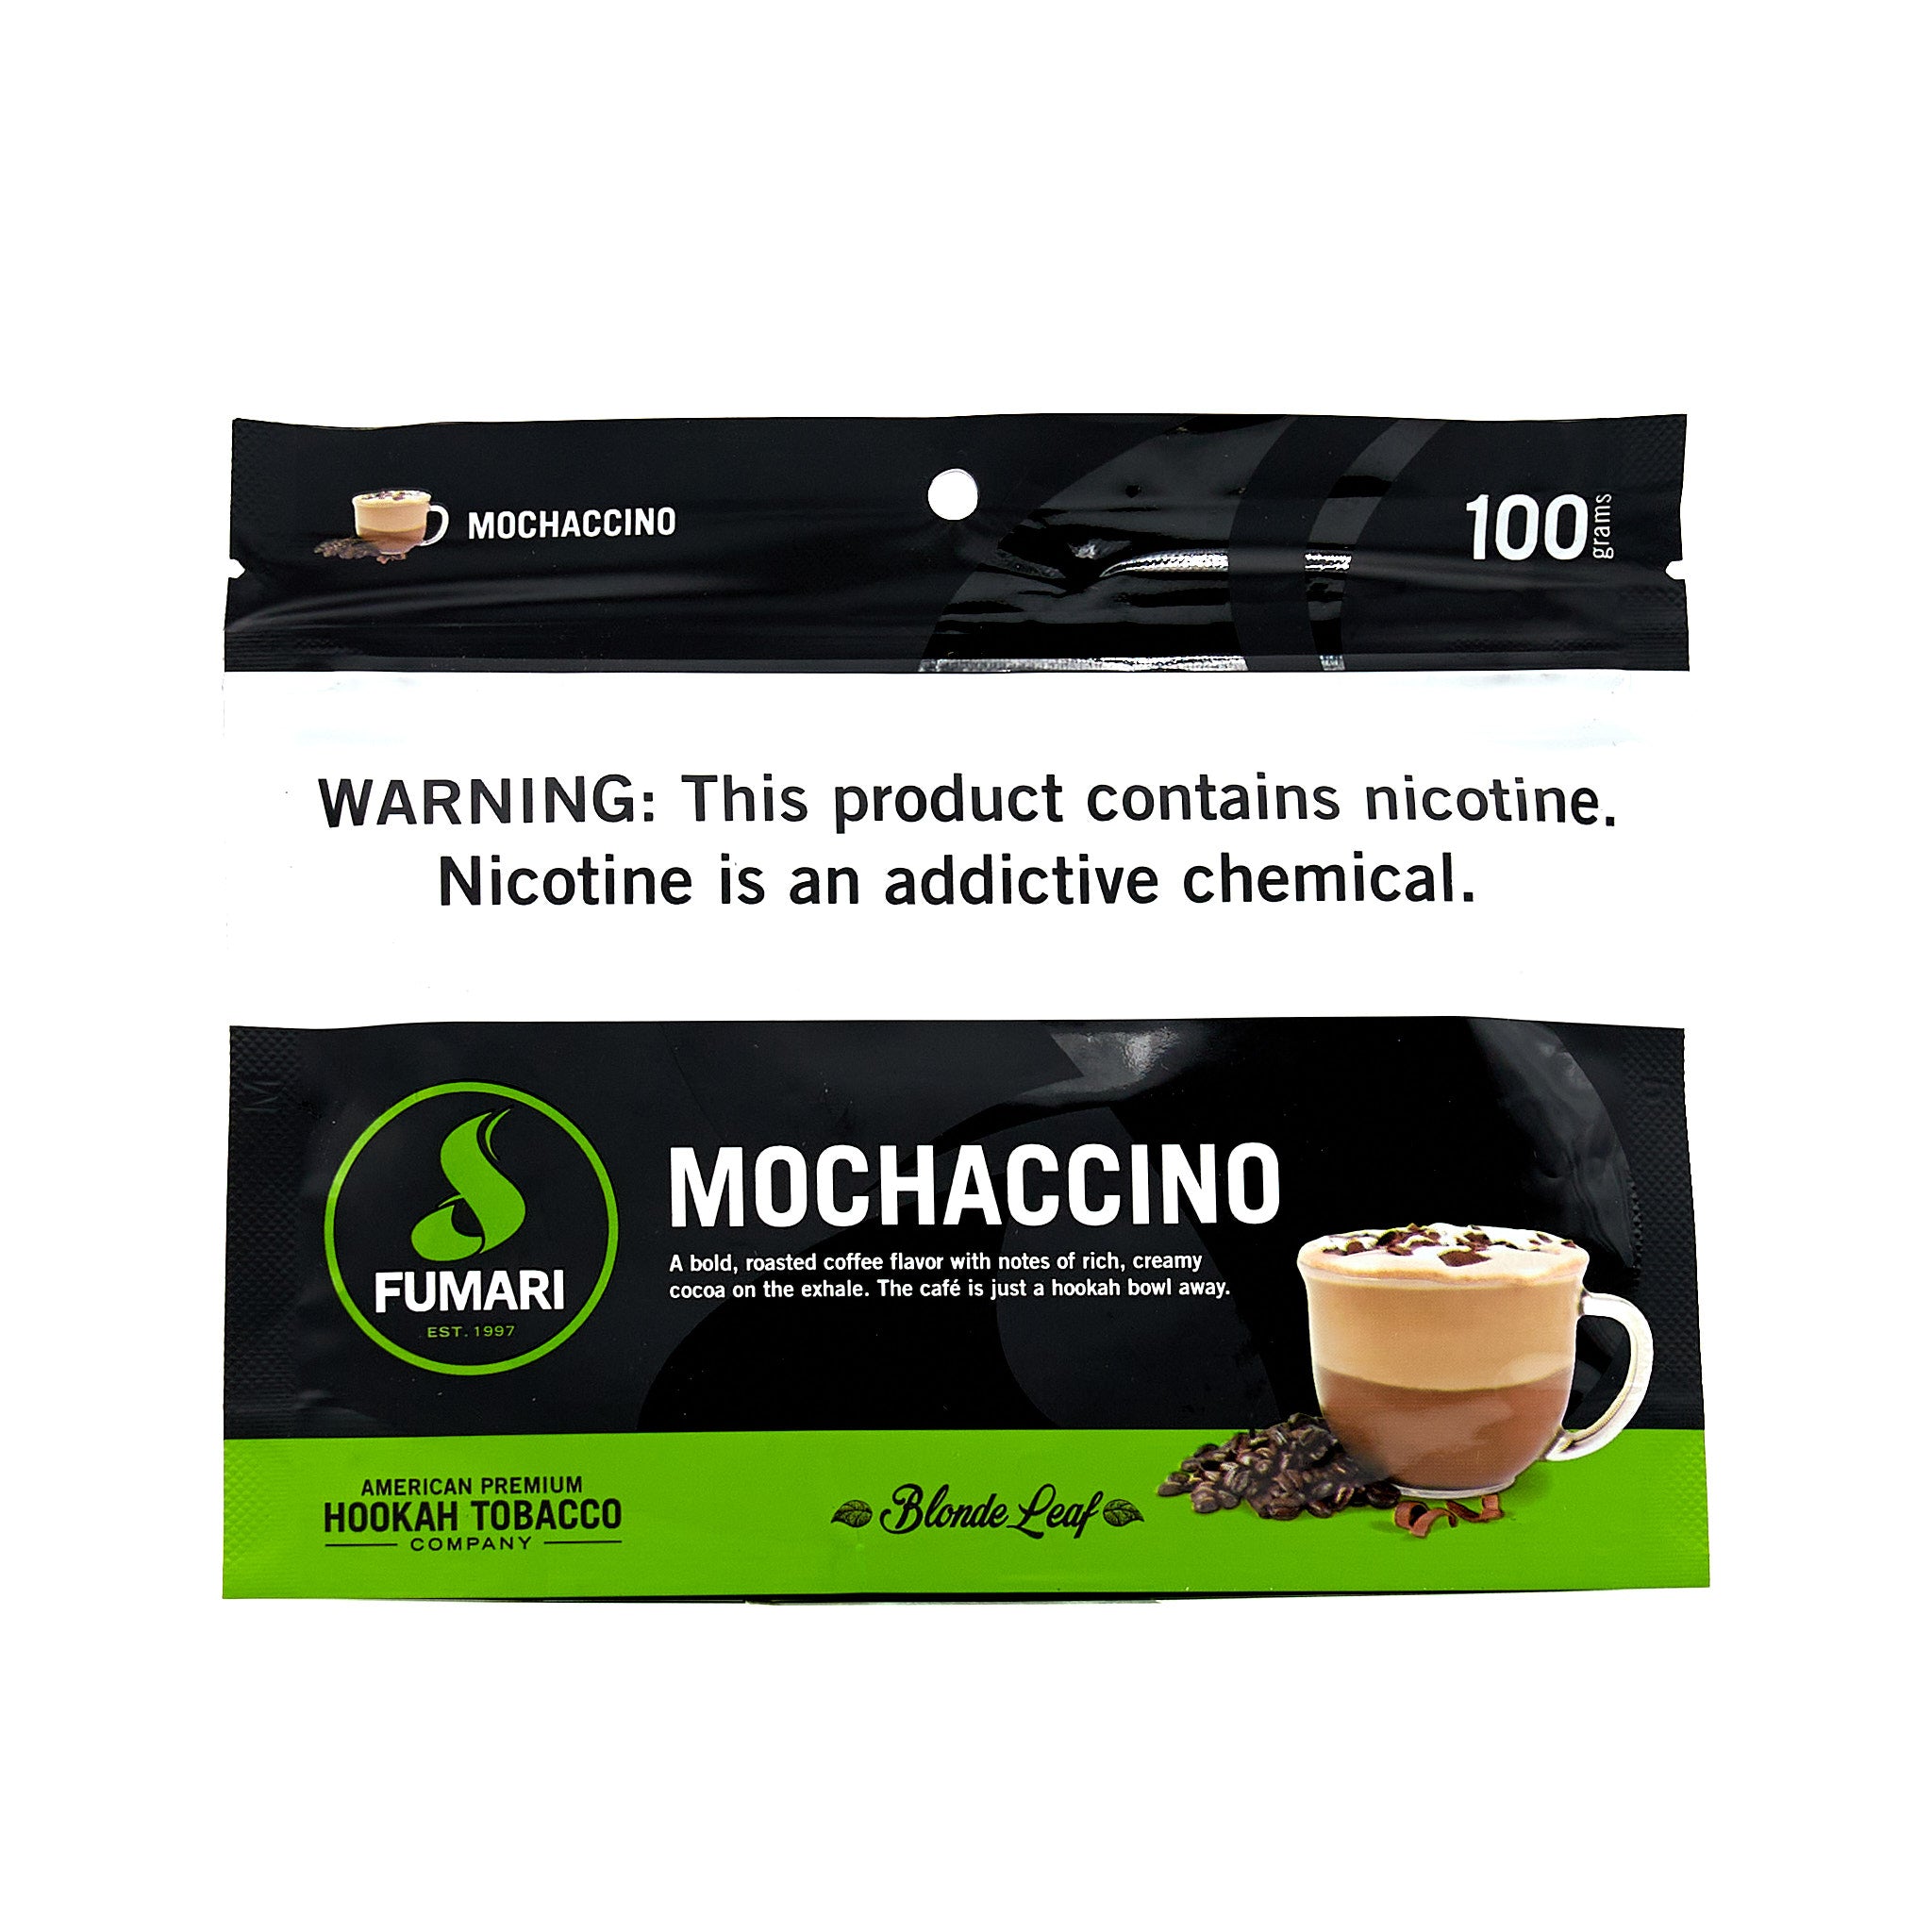 Mochaccino / モカチーノ (100g)